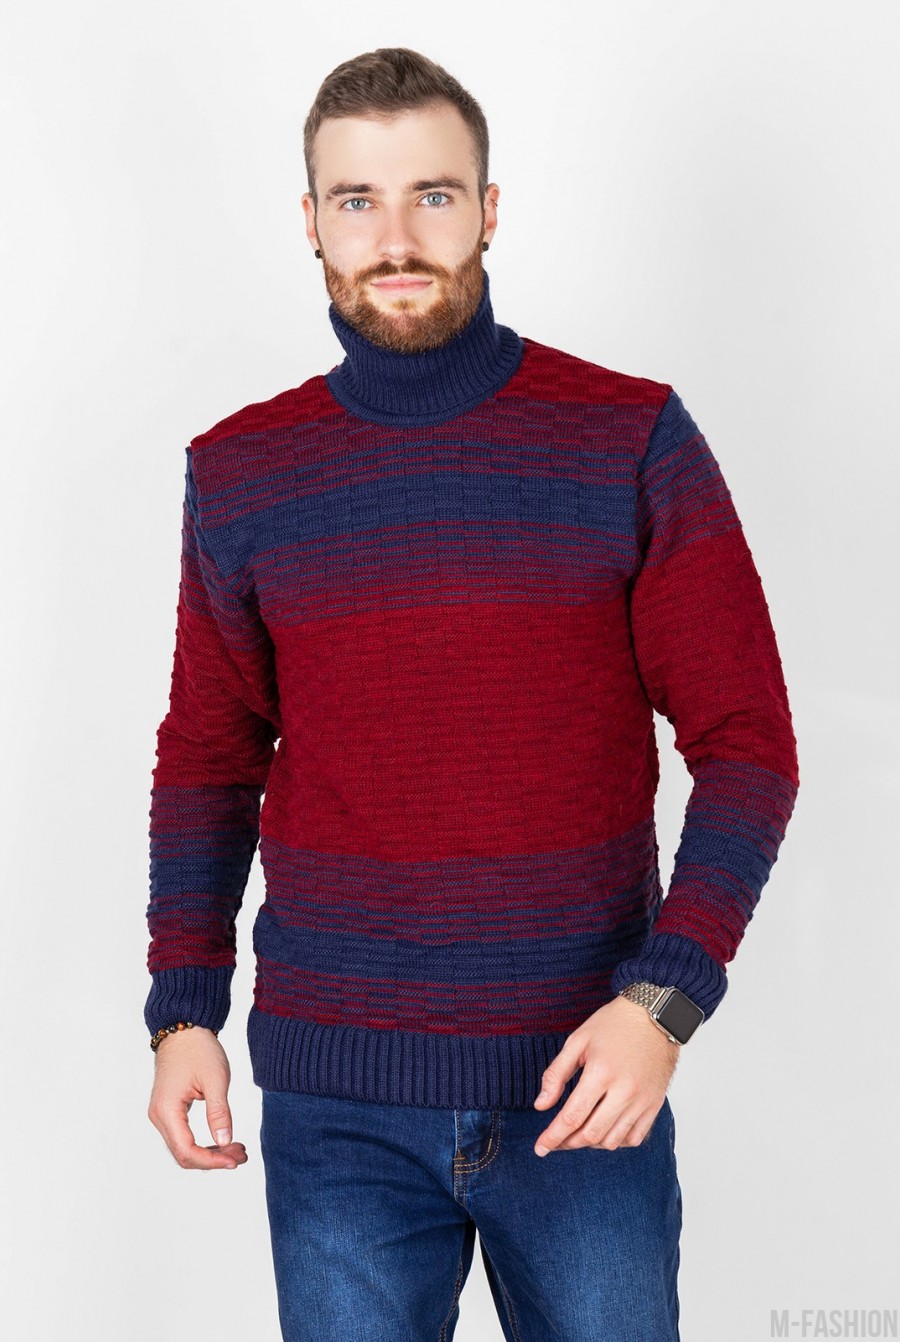 Бордово-синий вязаный свитер с высоким горлом - Фото 1